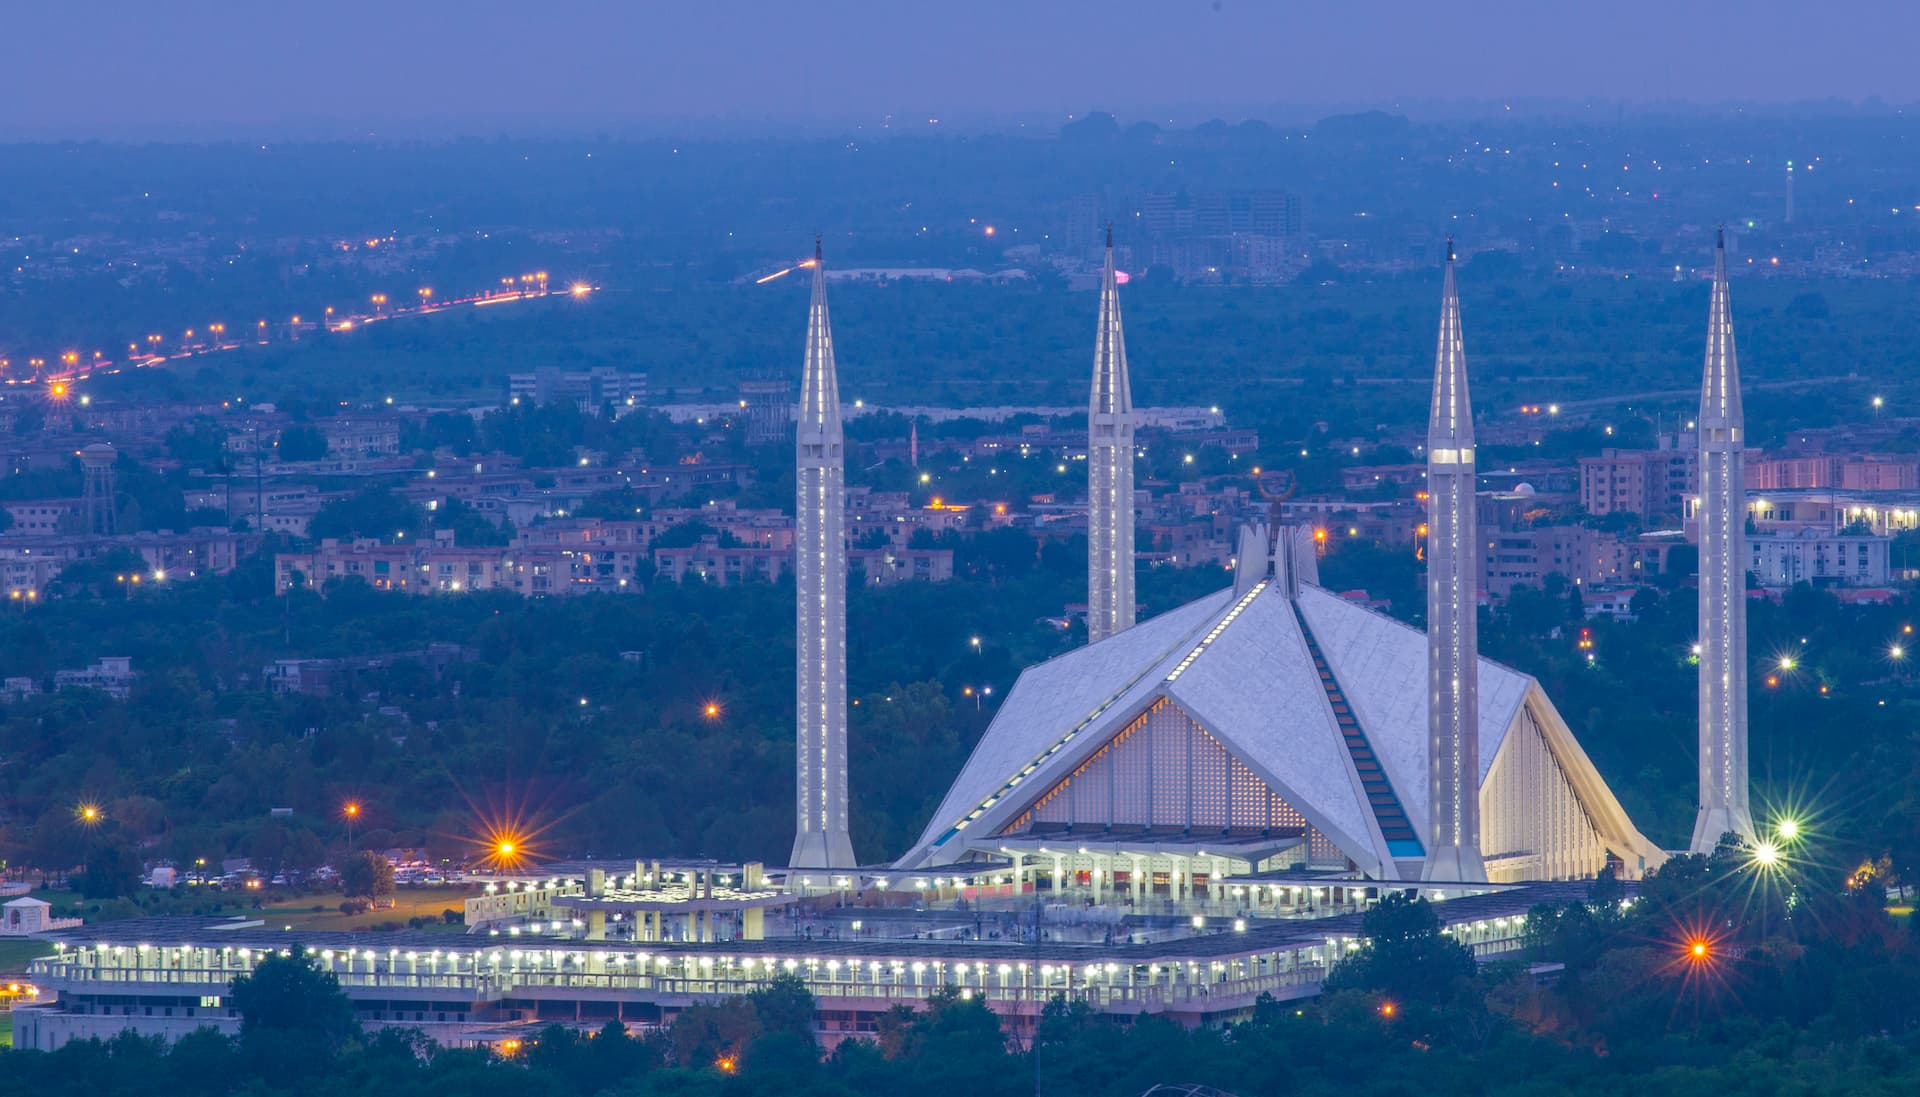 اسلام آباد